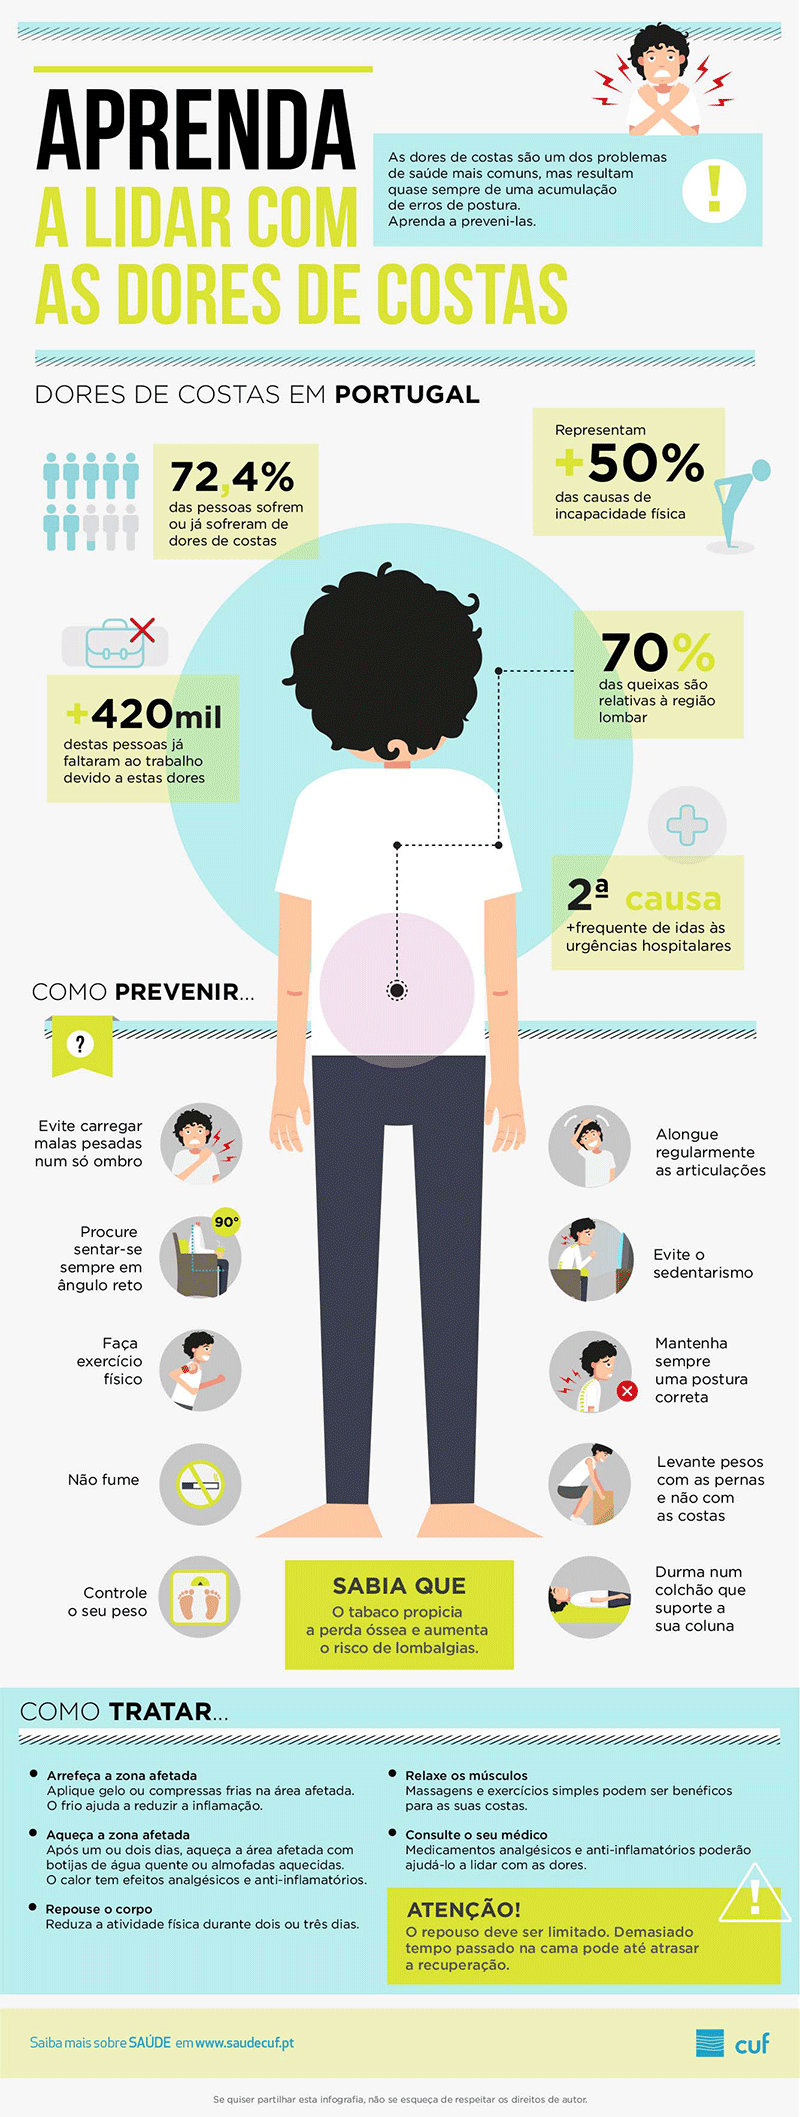 Infografia sobre tratamento e prevenção de dores nas costas